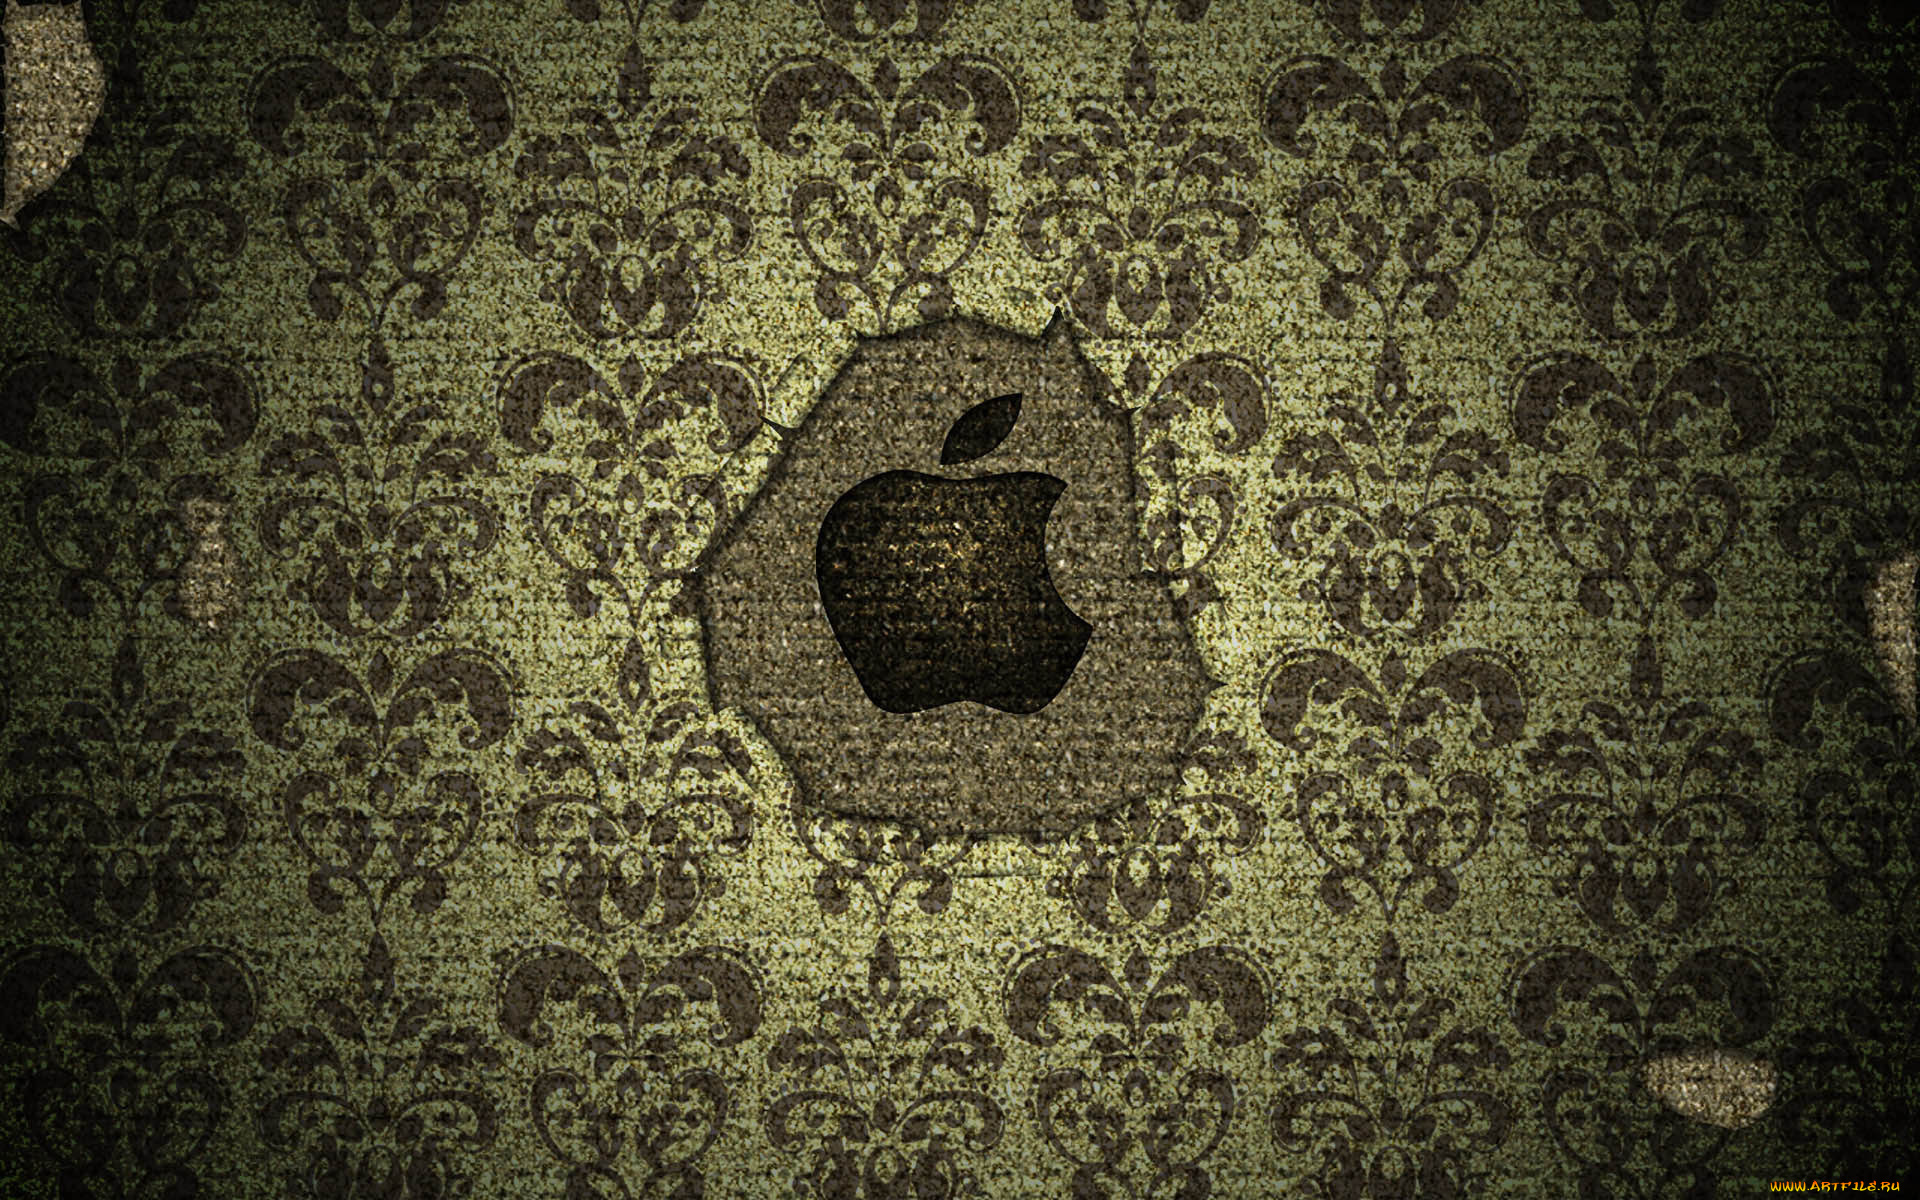 компьютеры, apple